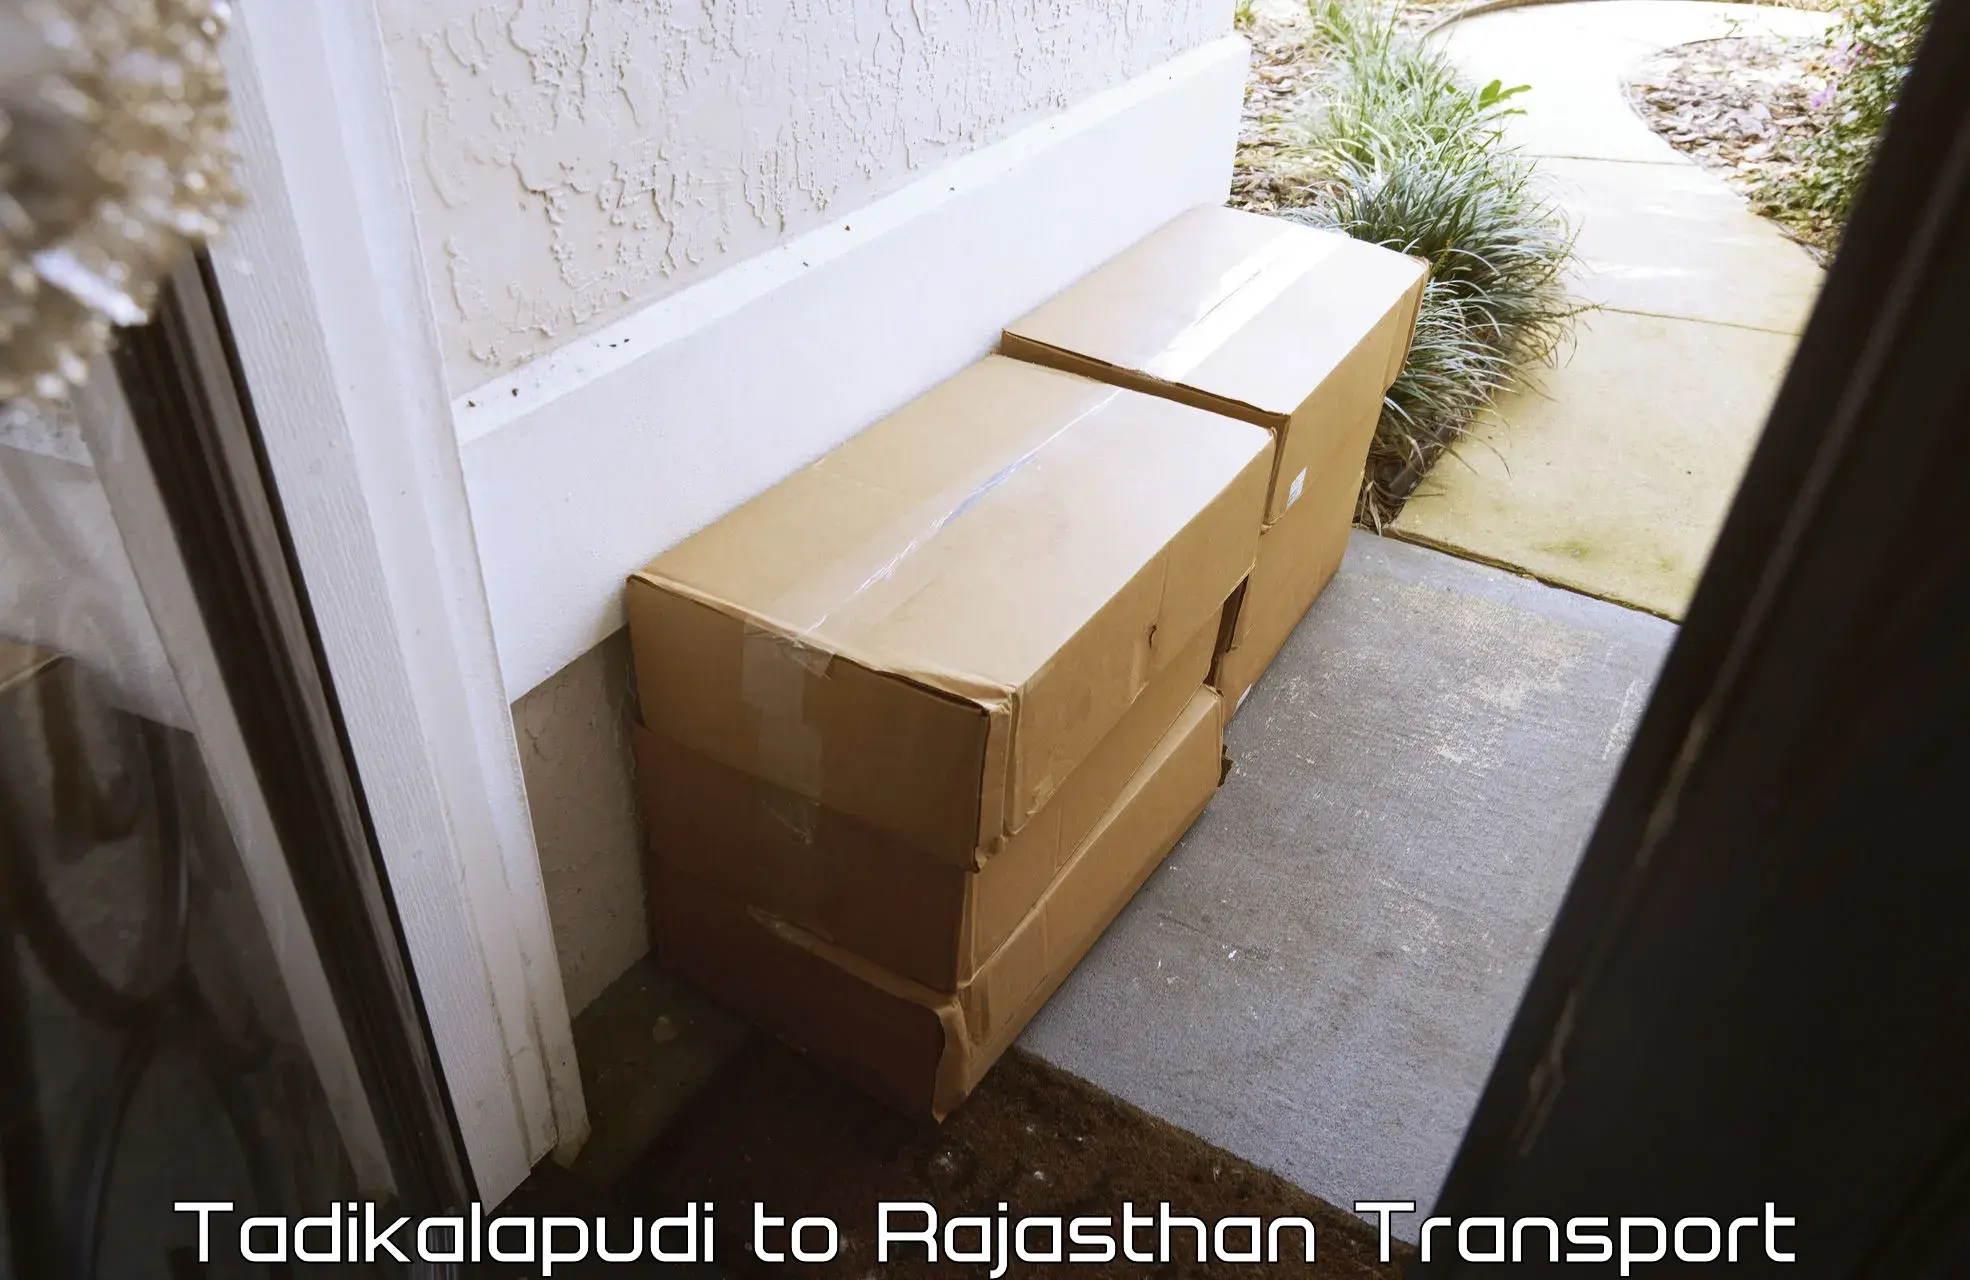 Furniture transport service Tadikalapudi to Rajasthan